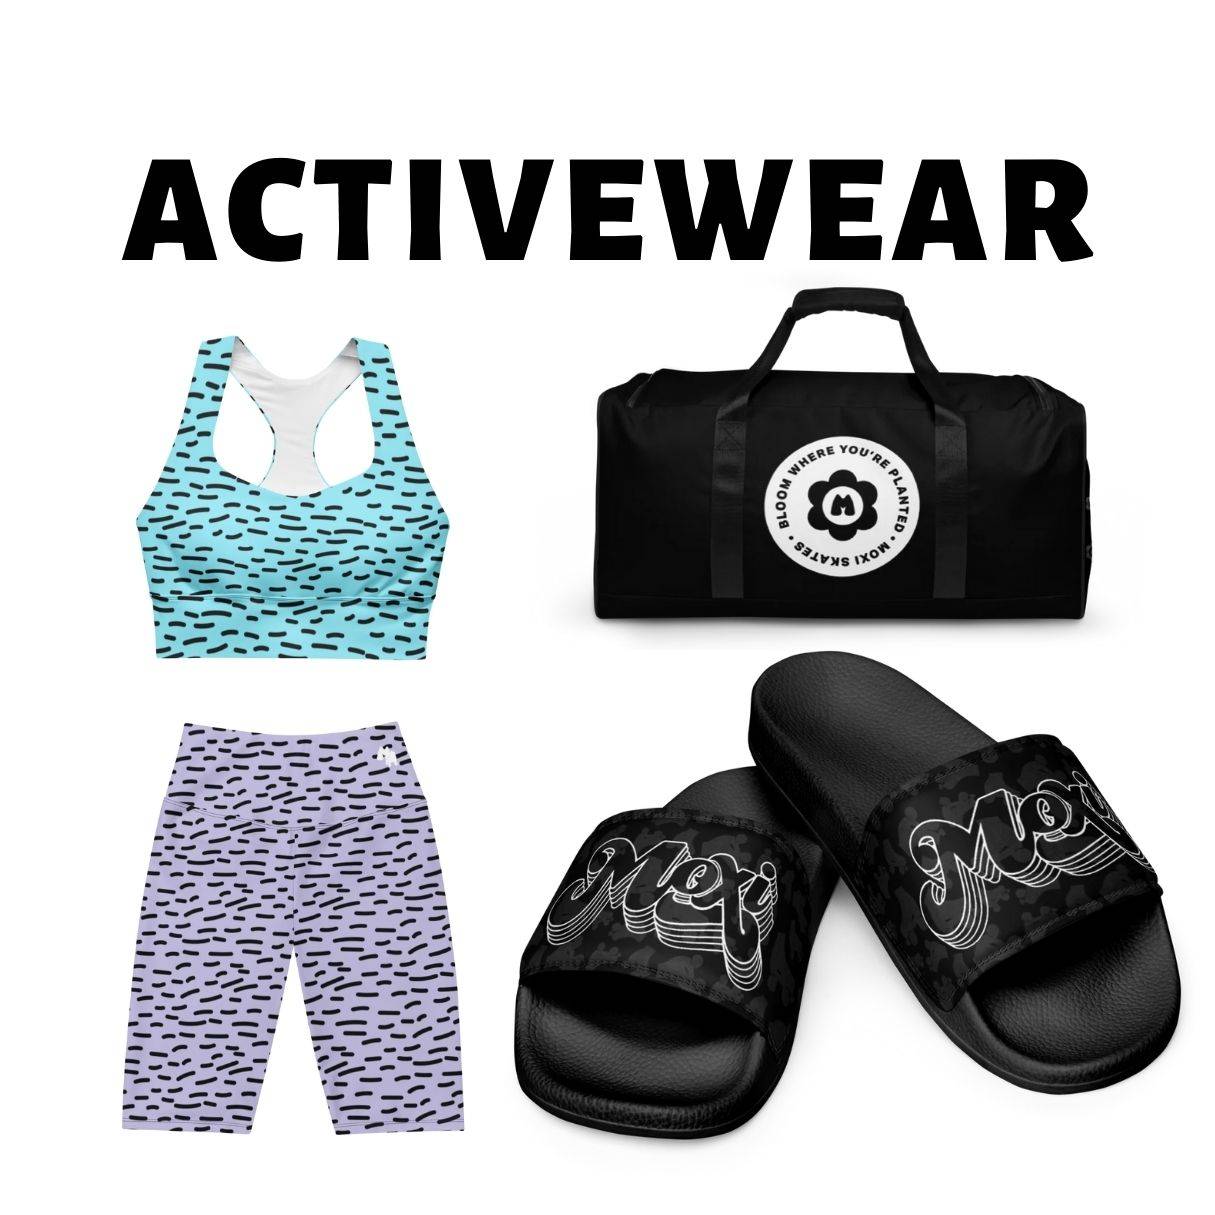 activewear